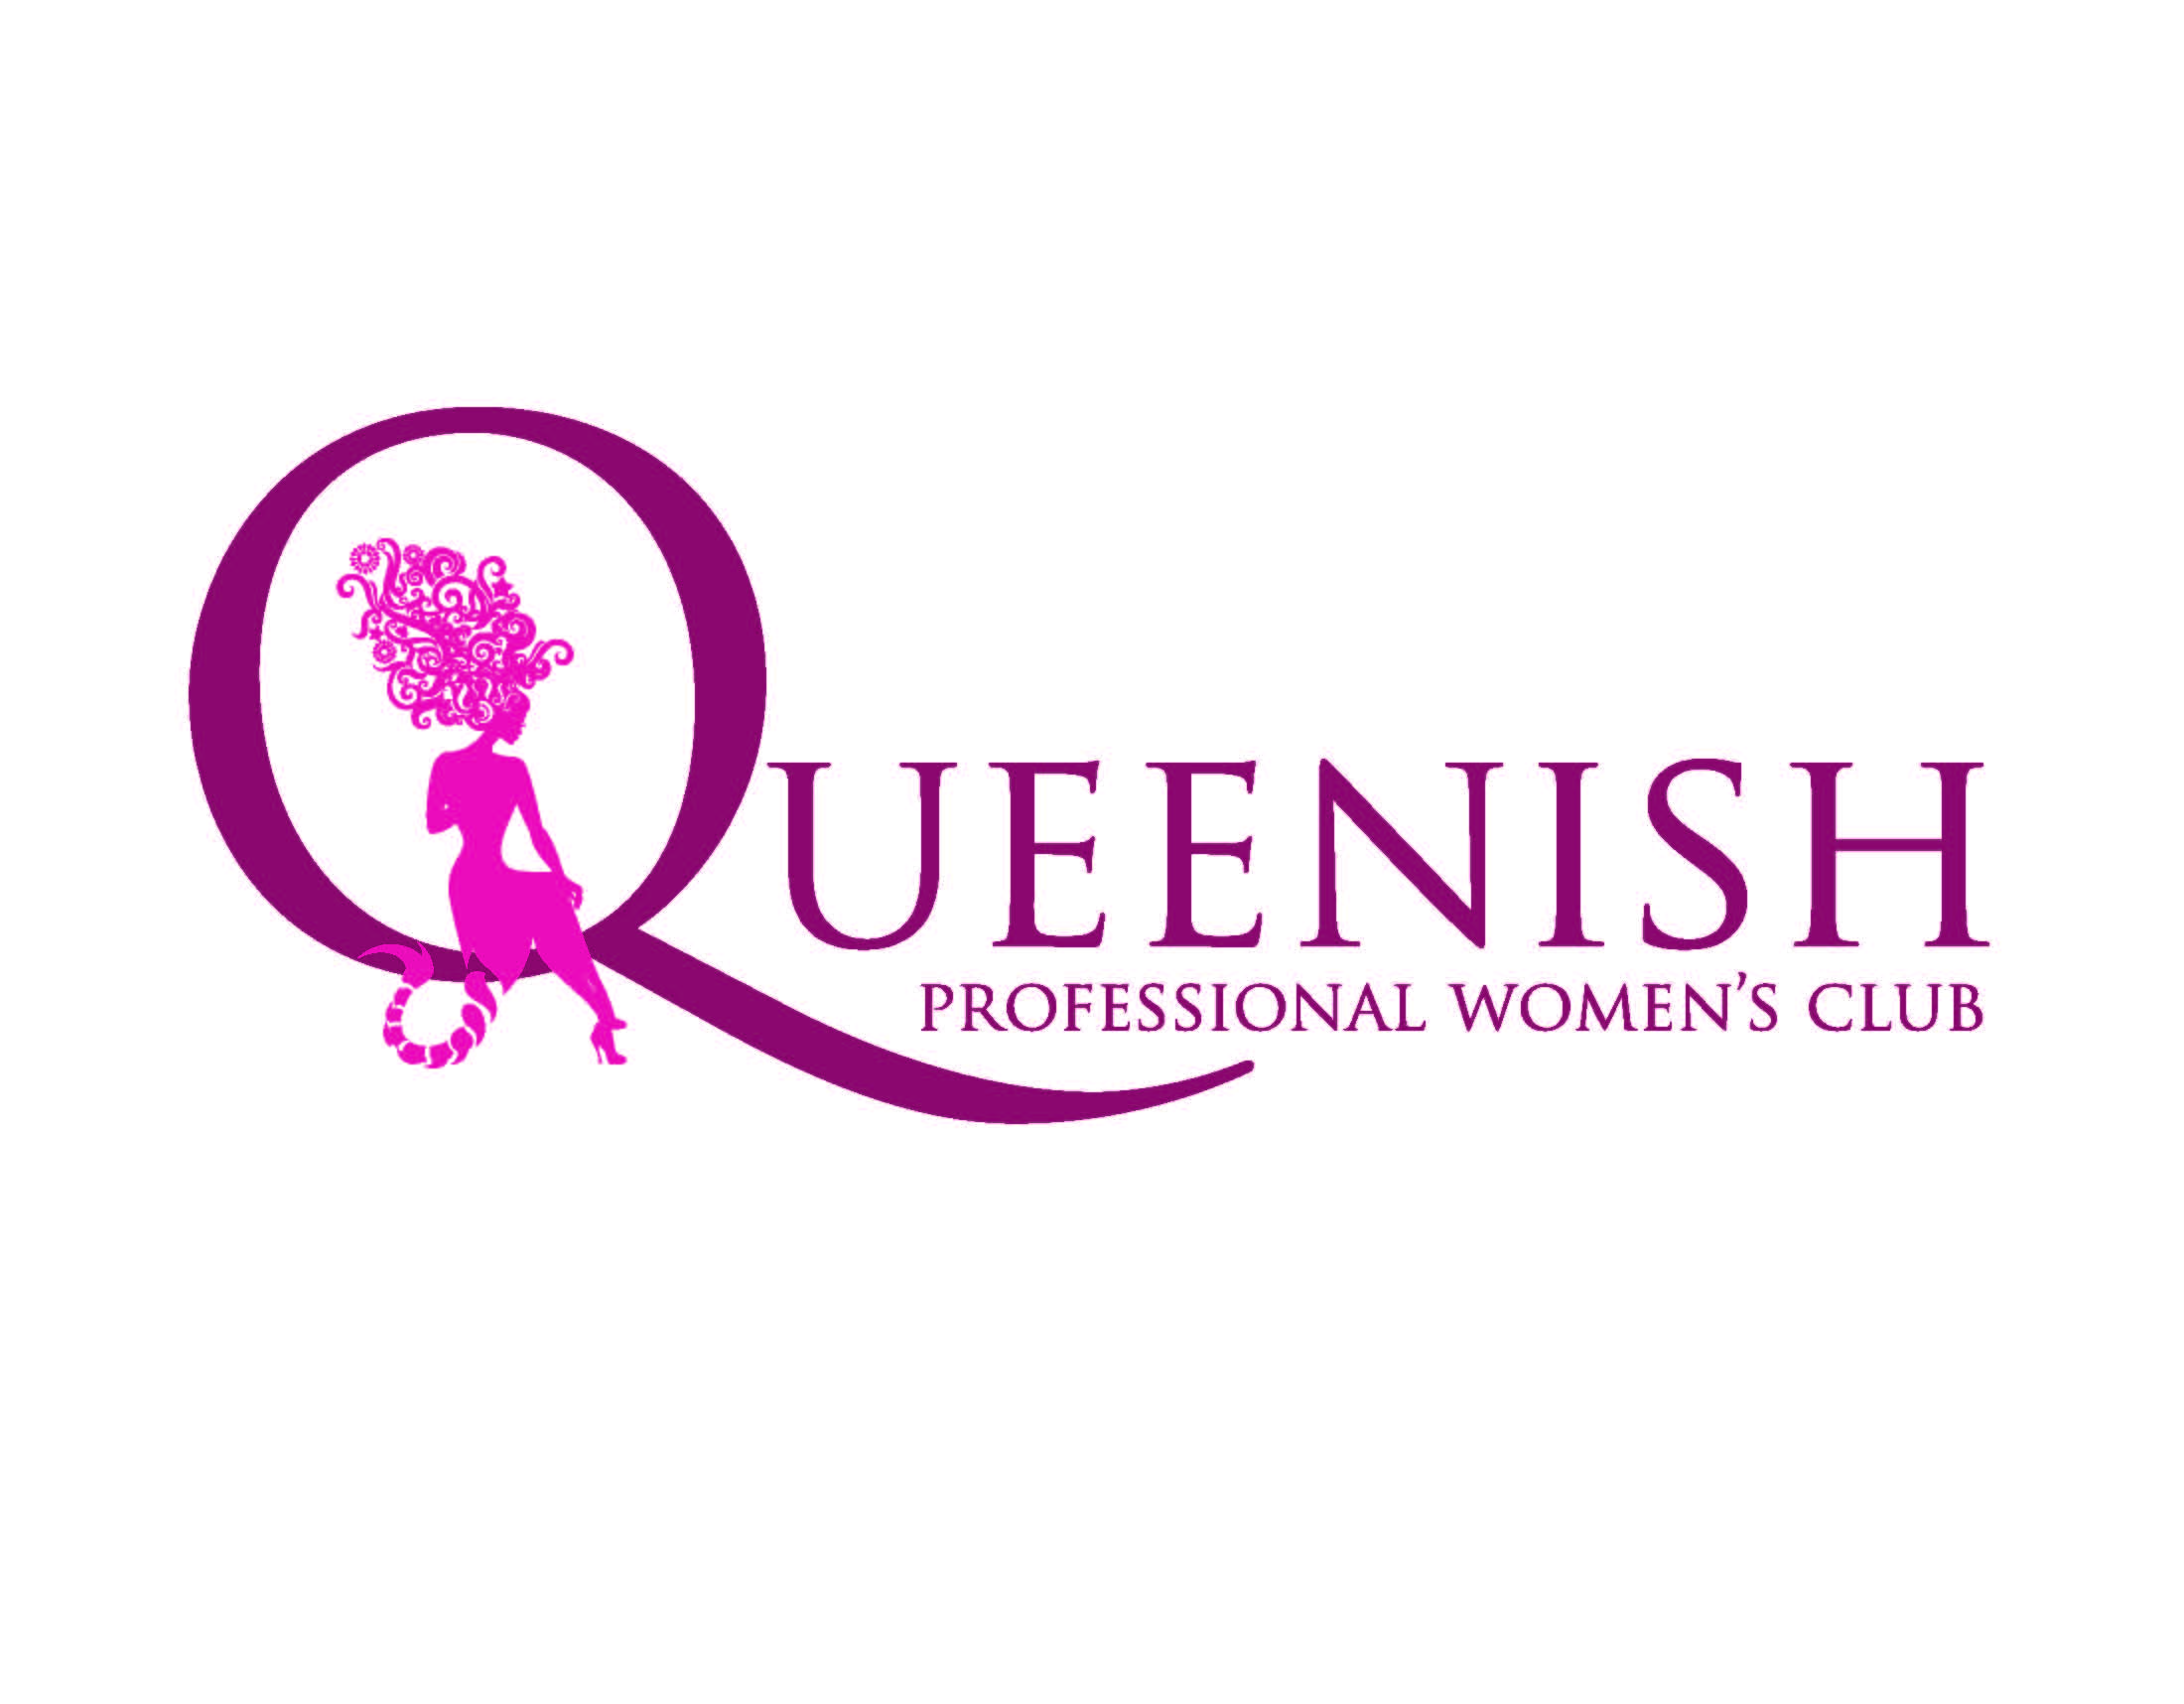 Queenish Professional Women's Club